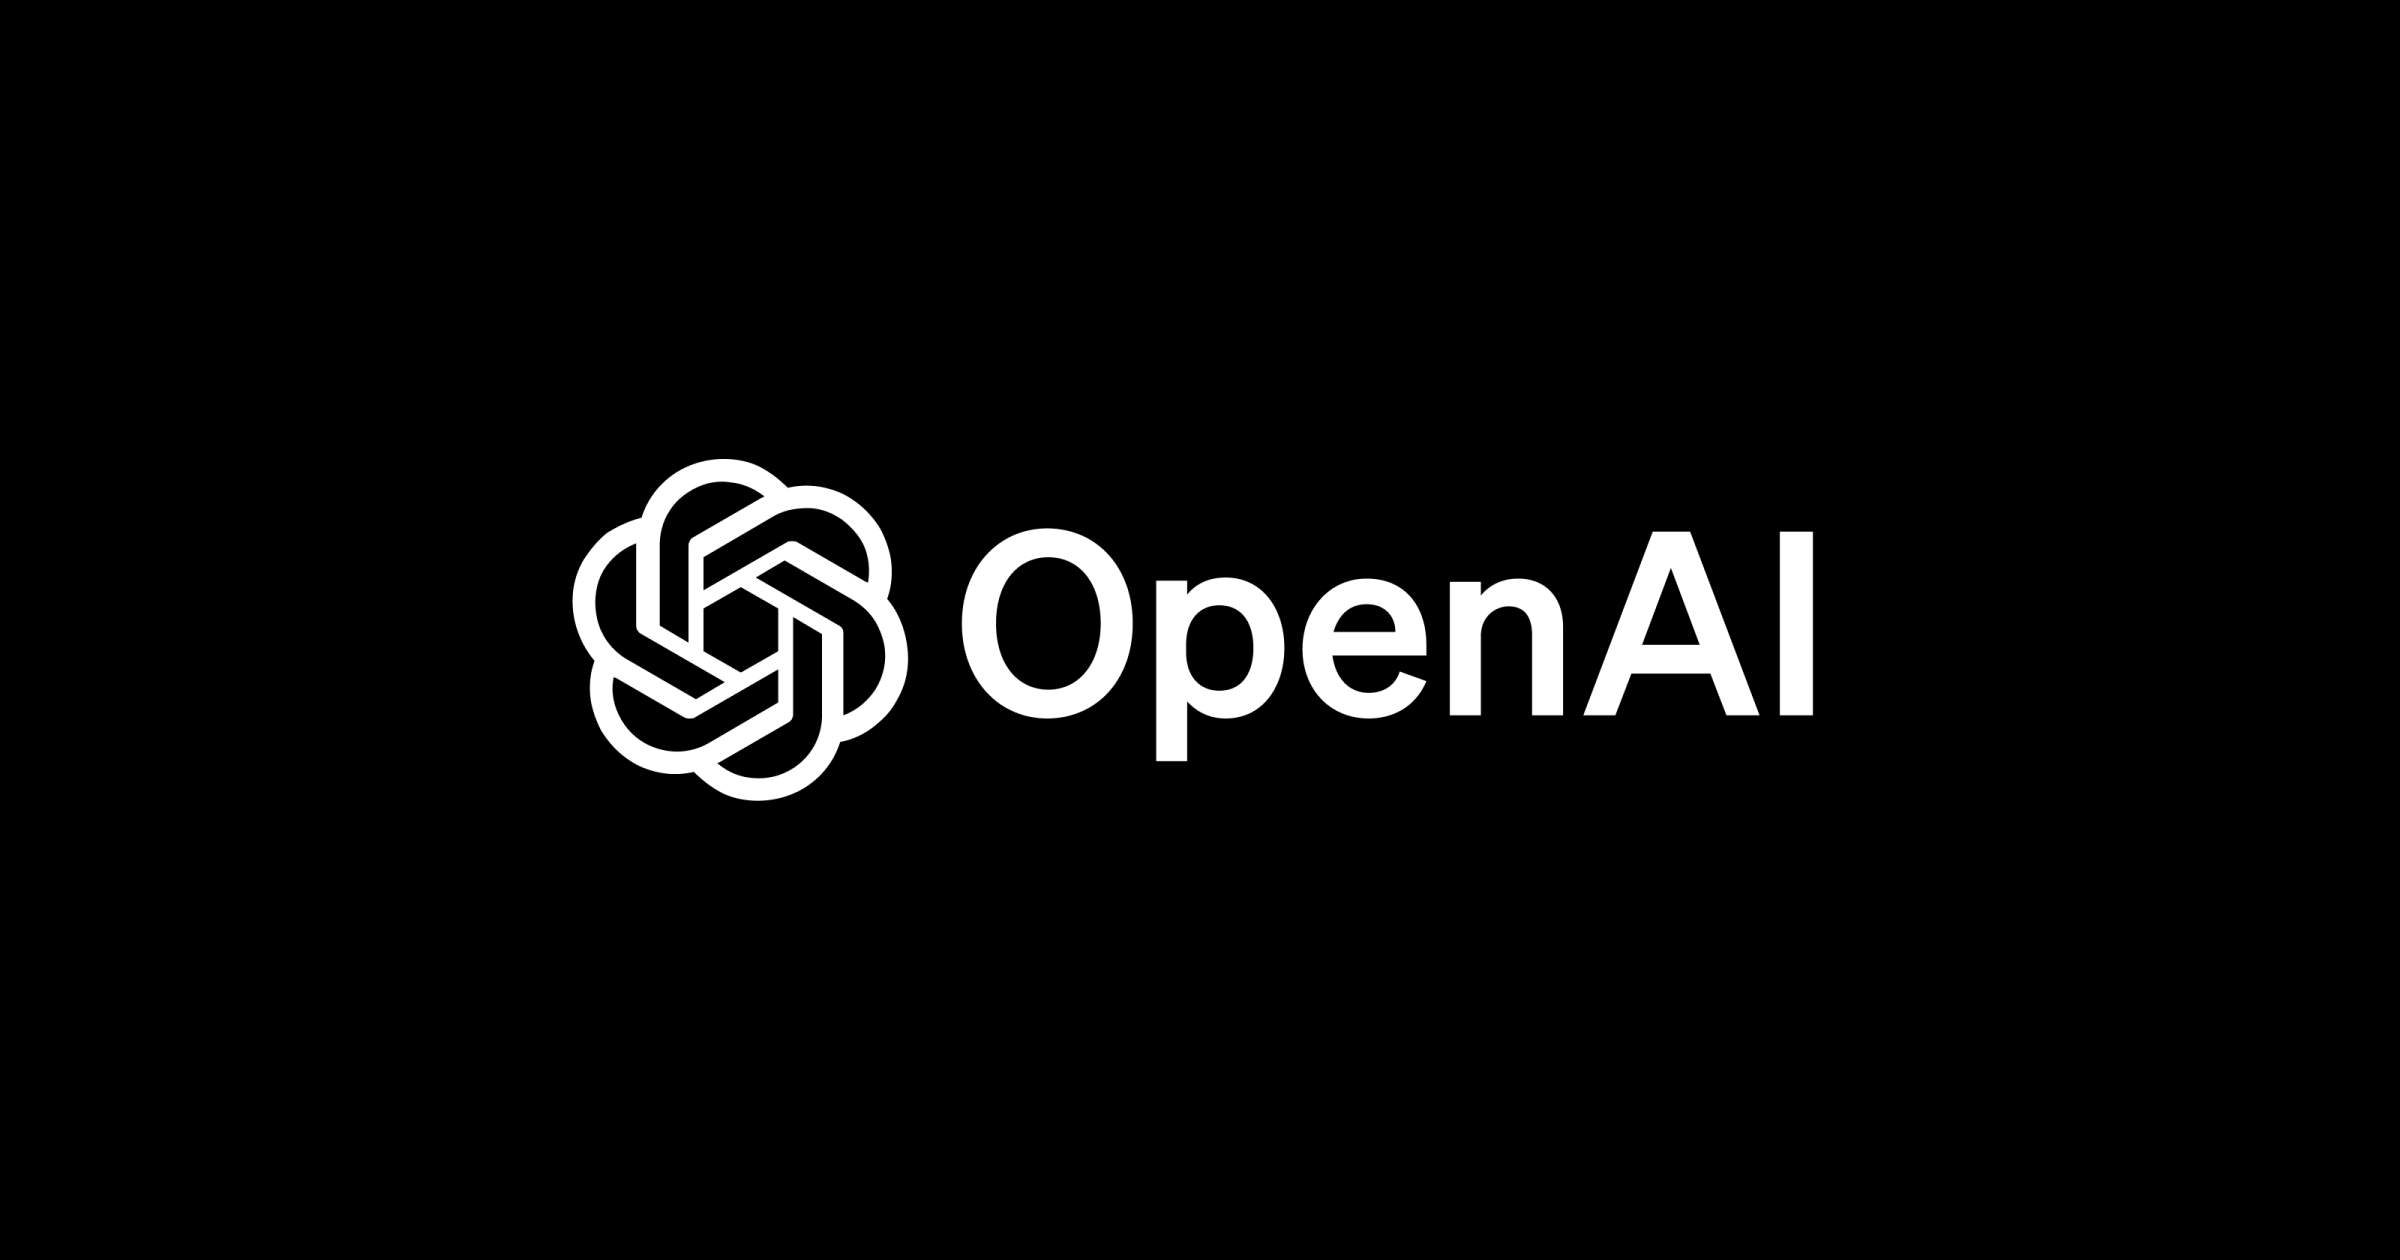 بررسی کامل شد و آلتمن، براکمن همچنان رهبری OpenAI را بر عهده دارد